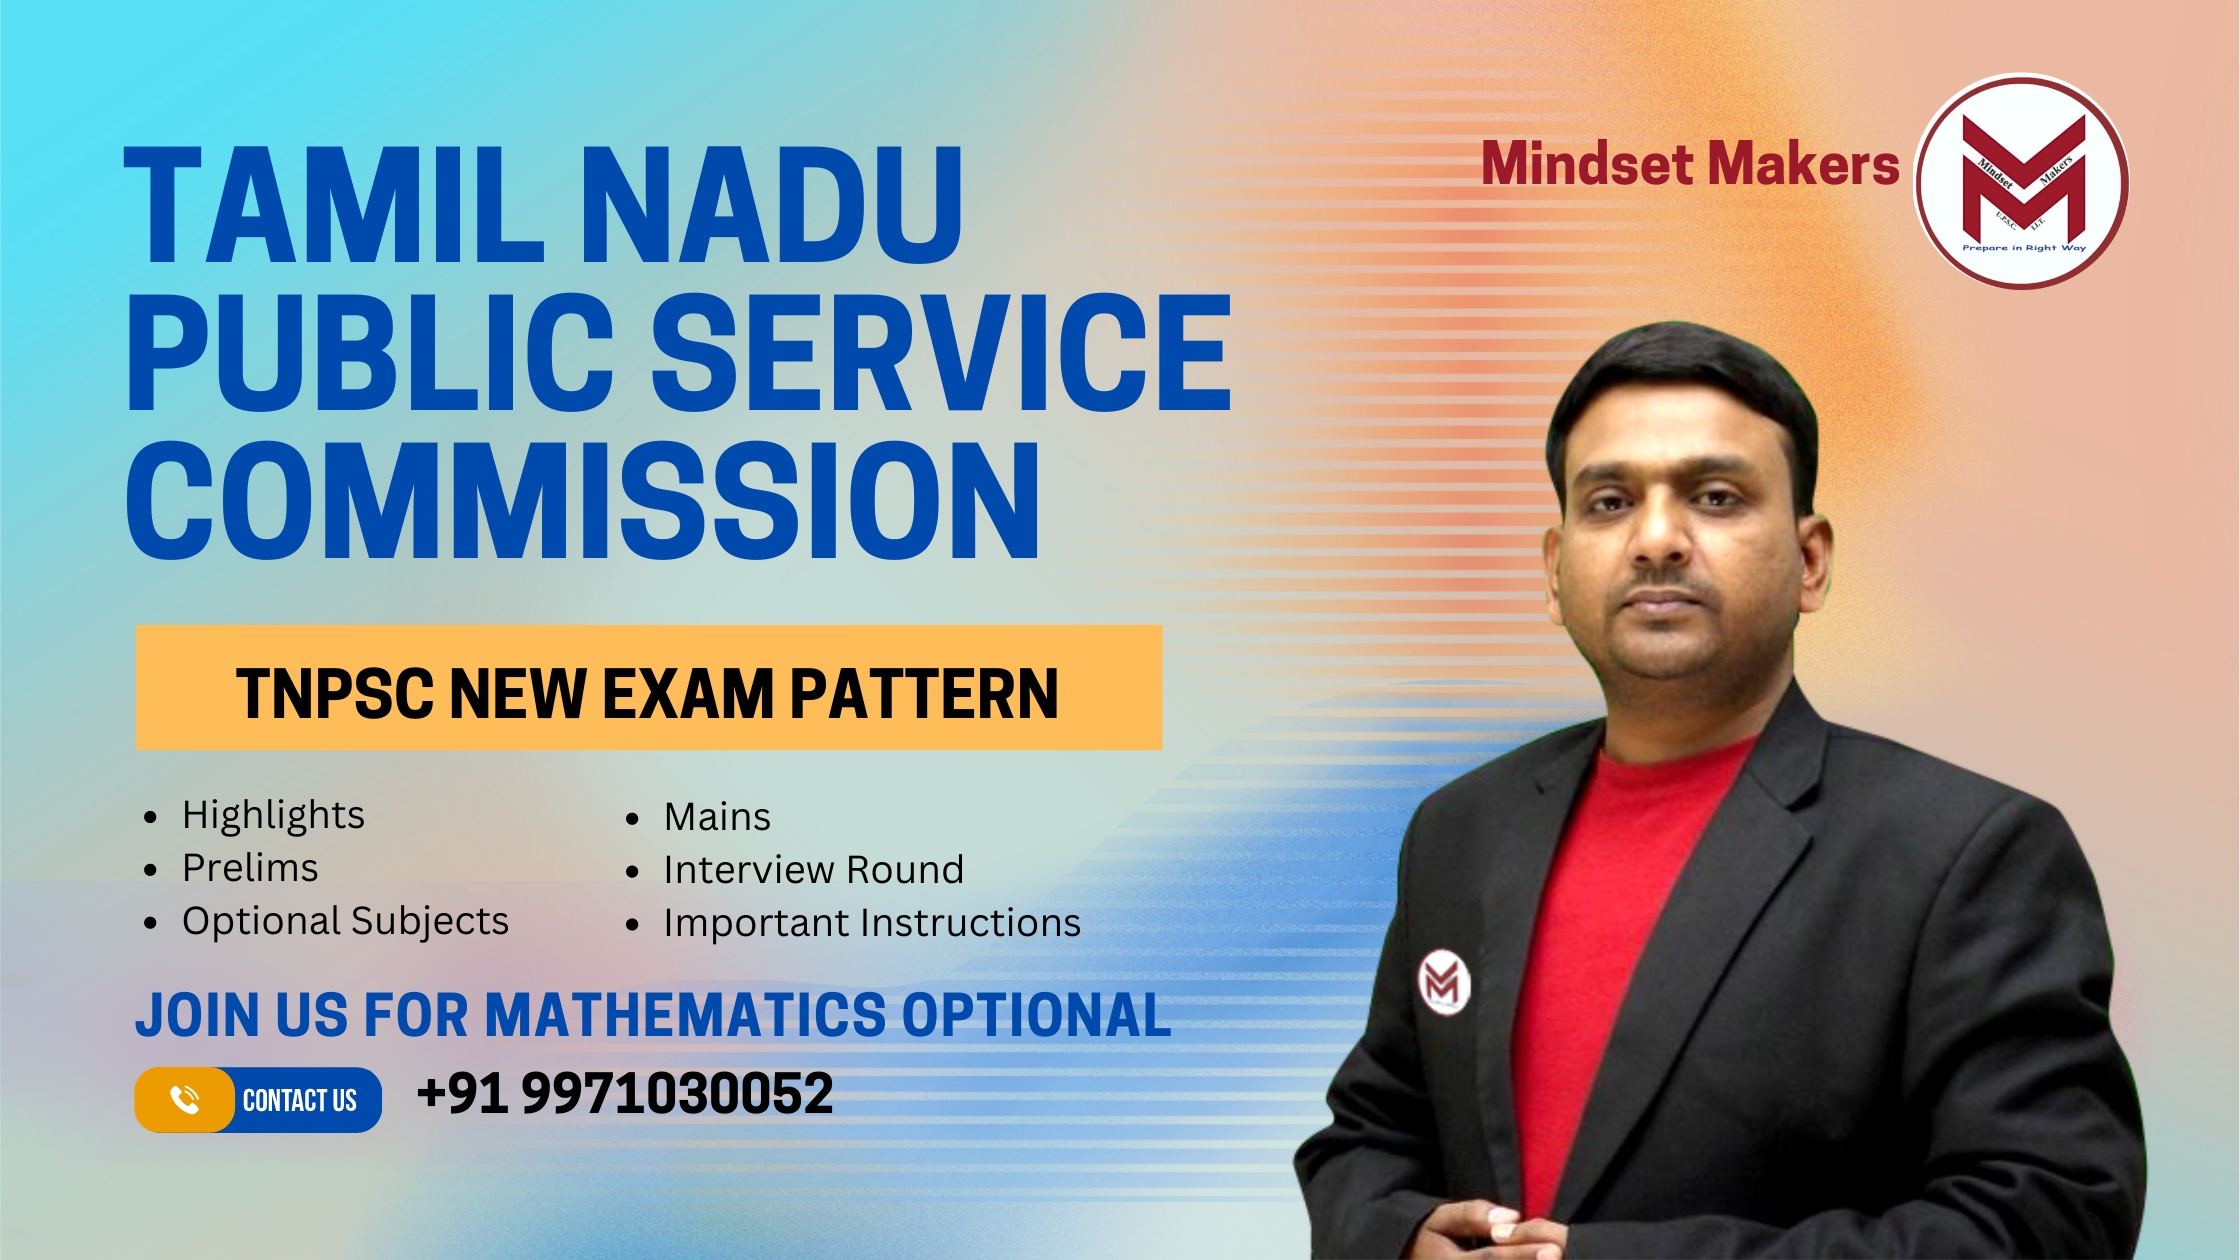 Tamil Nadu Public Service Commission (TNPSC) New Exam Pattern